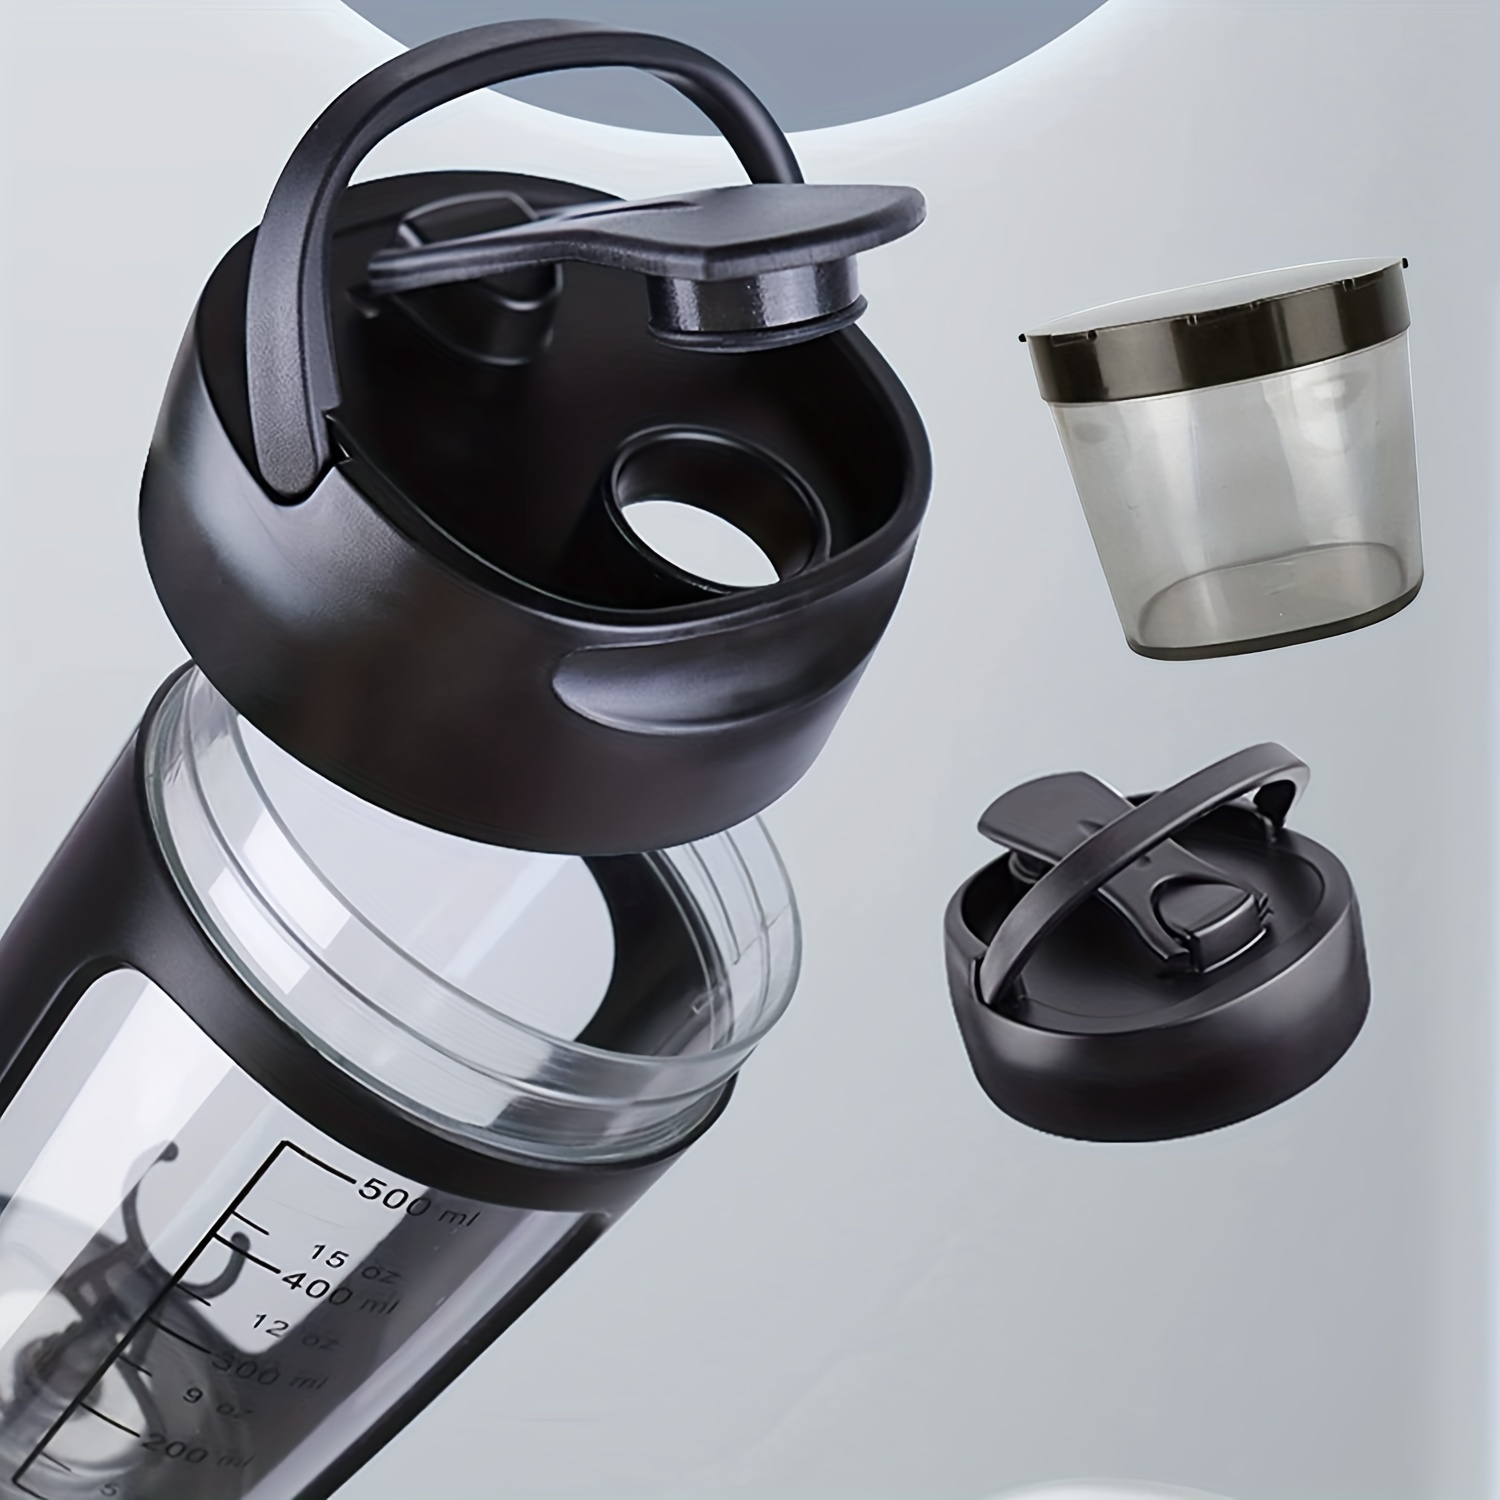 Blender Bottle ® ProStak® Twist n' Lock™ Smart Mixer Protein Cup